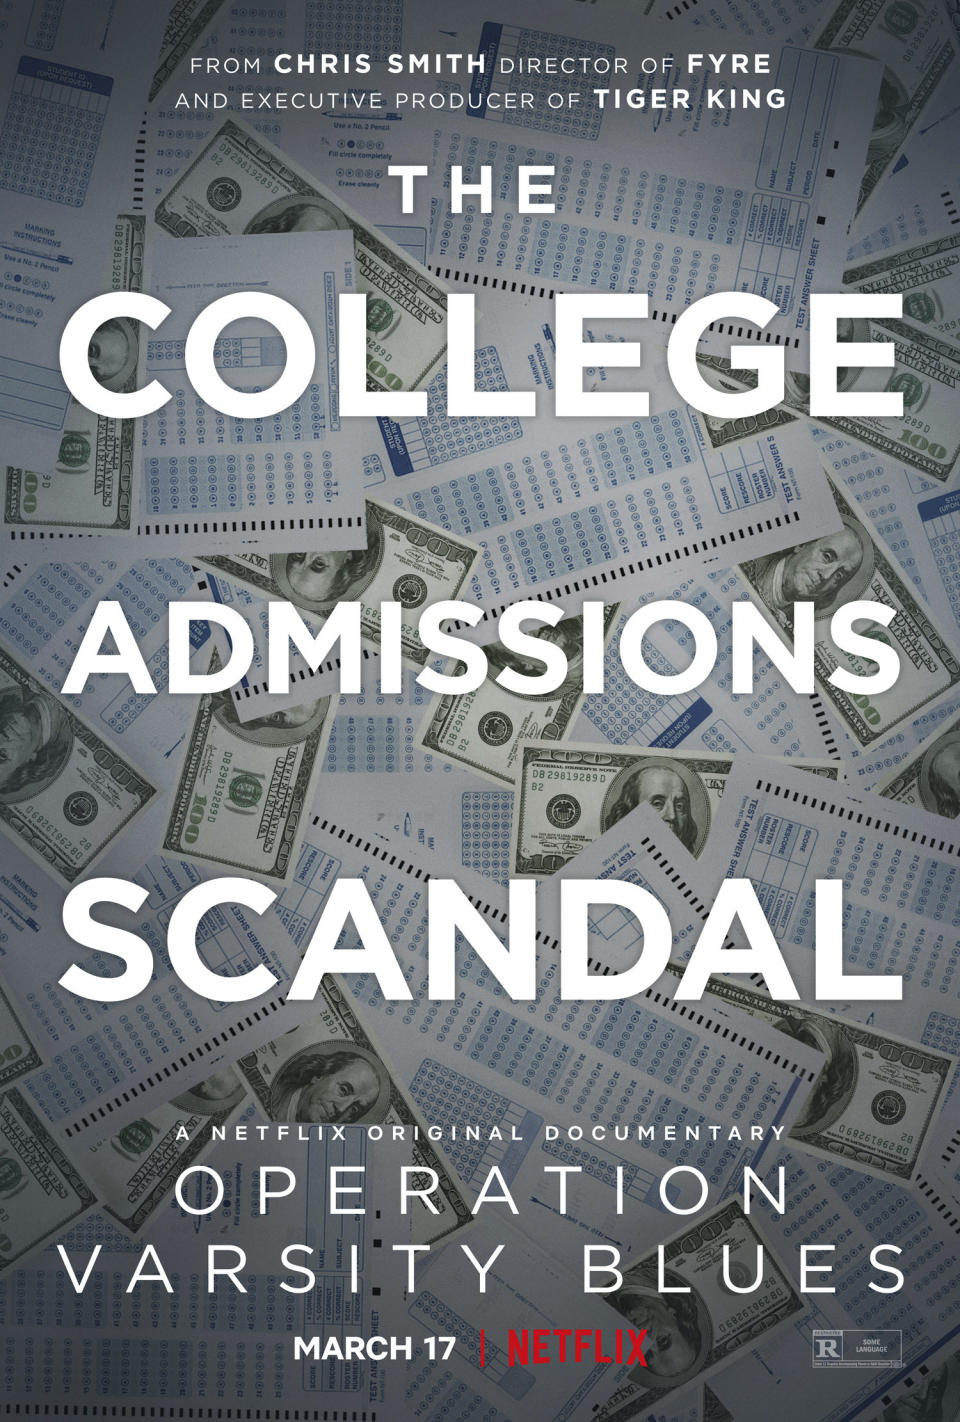 En esta imagen difundida por Netflix, el póster de "Operation Varsity Blues", un documental sobre el escándalo de sobornos a universidades estadounidenses que se estrena el 17 de marzo. (Netflix vía AP)